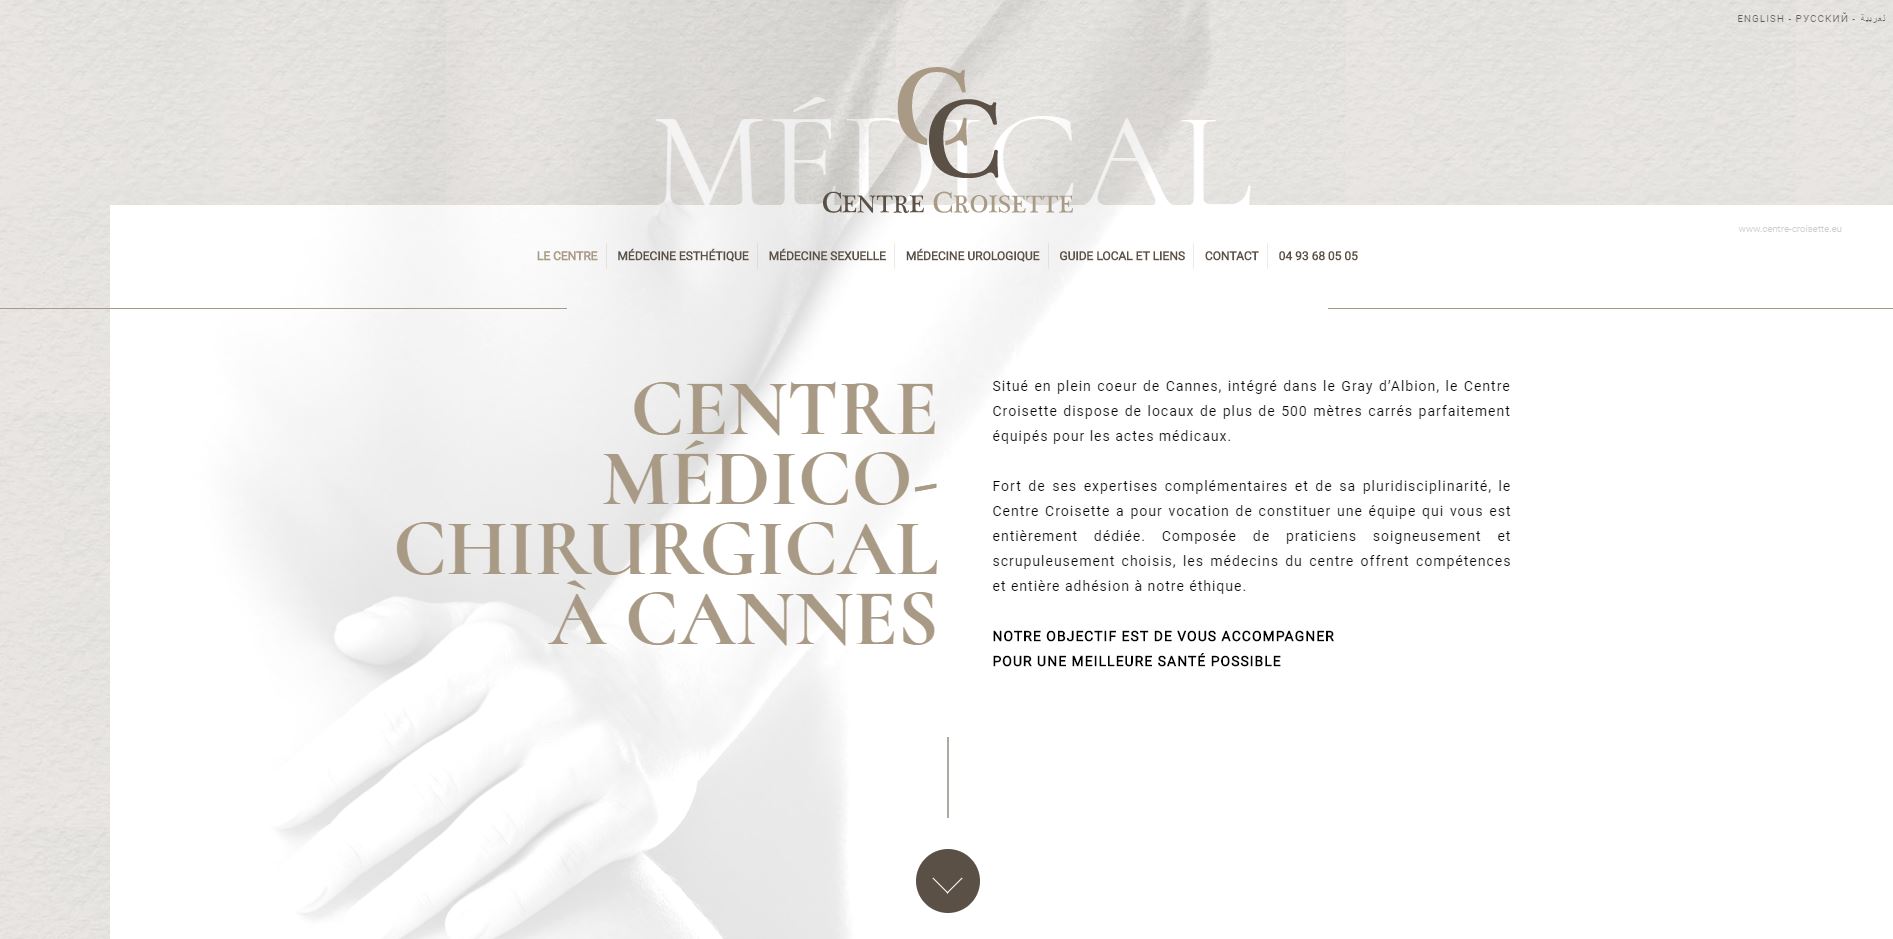 Consultation de sexologue pour trouble de l’érection à Cannes – Centre Croisette